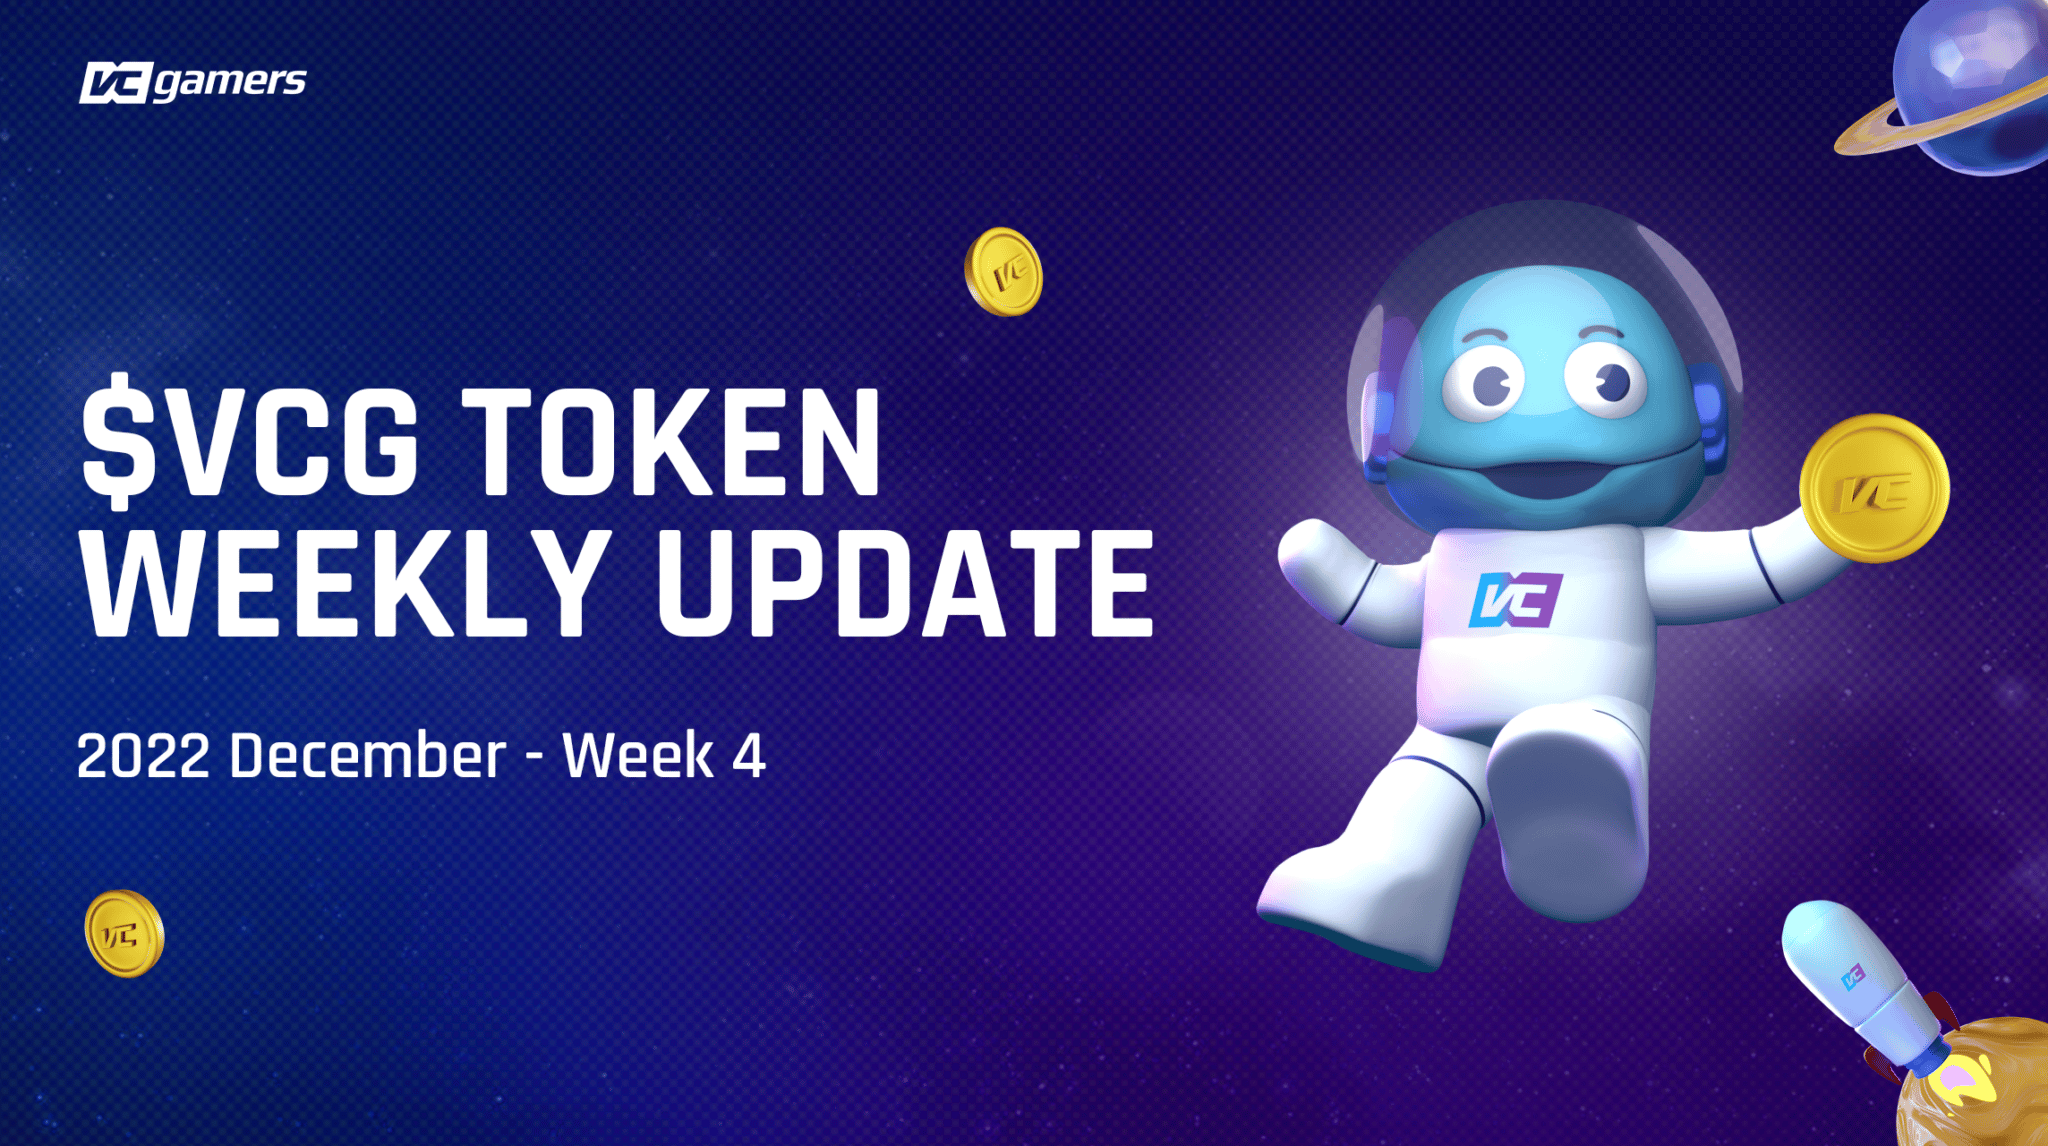 VCG Token Weekly Update